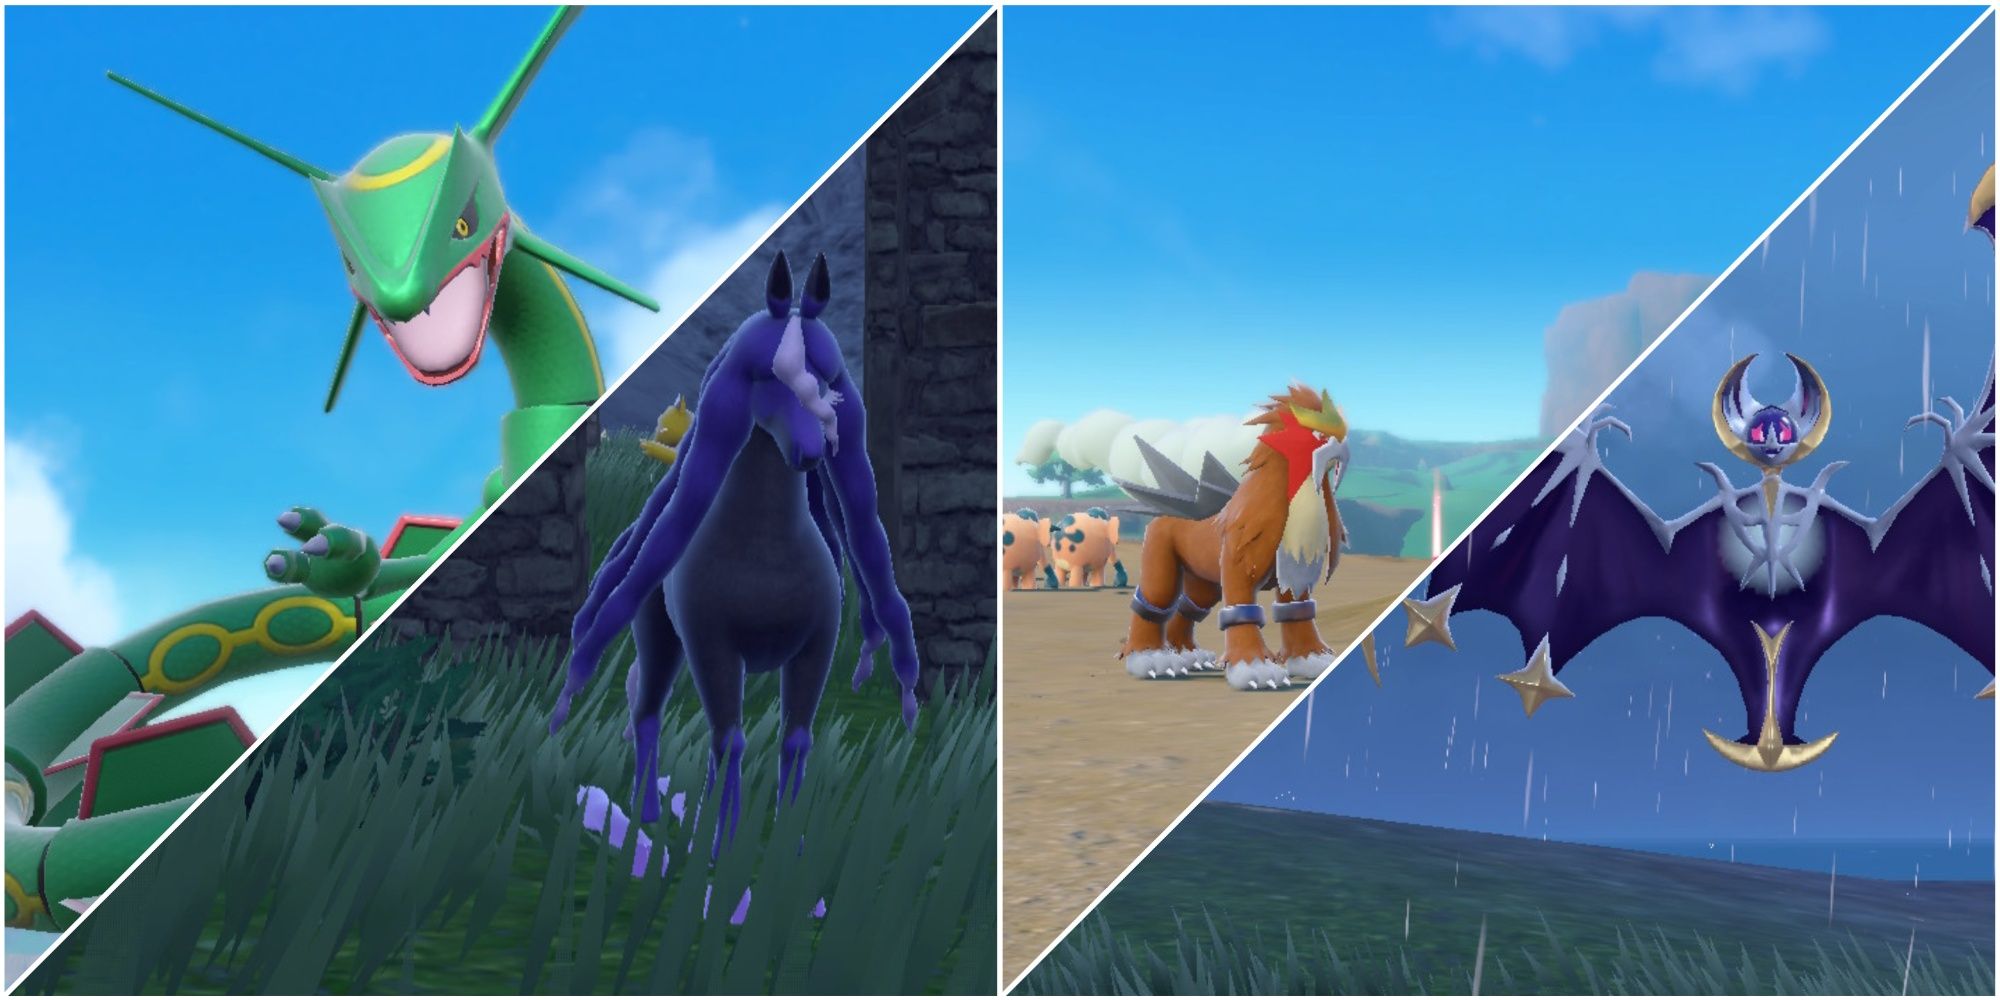 Legendäre Pokémon Scharlachrot und Violett, darunter Rayquaza, Spectrier, Entei und Lunala, von links nach rechts